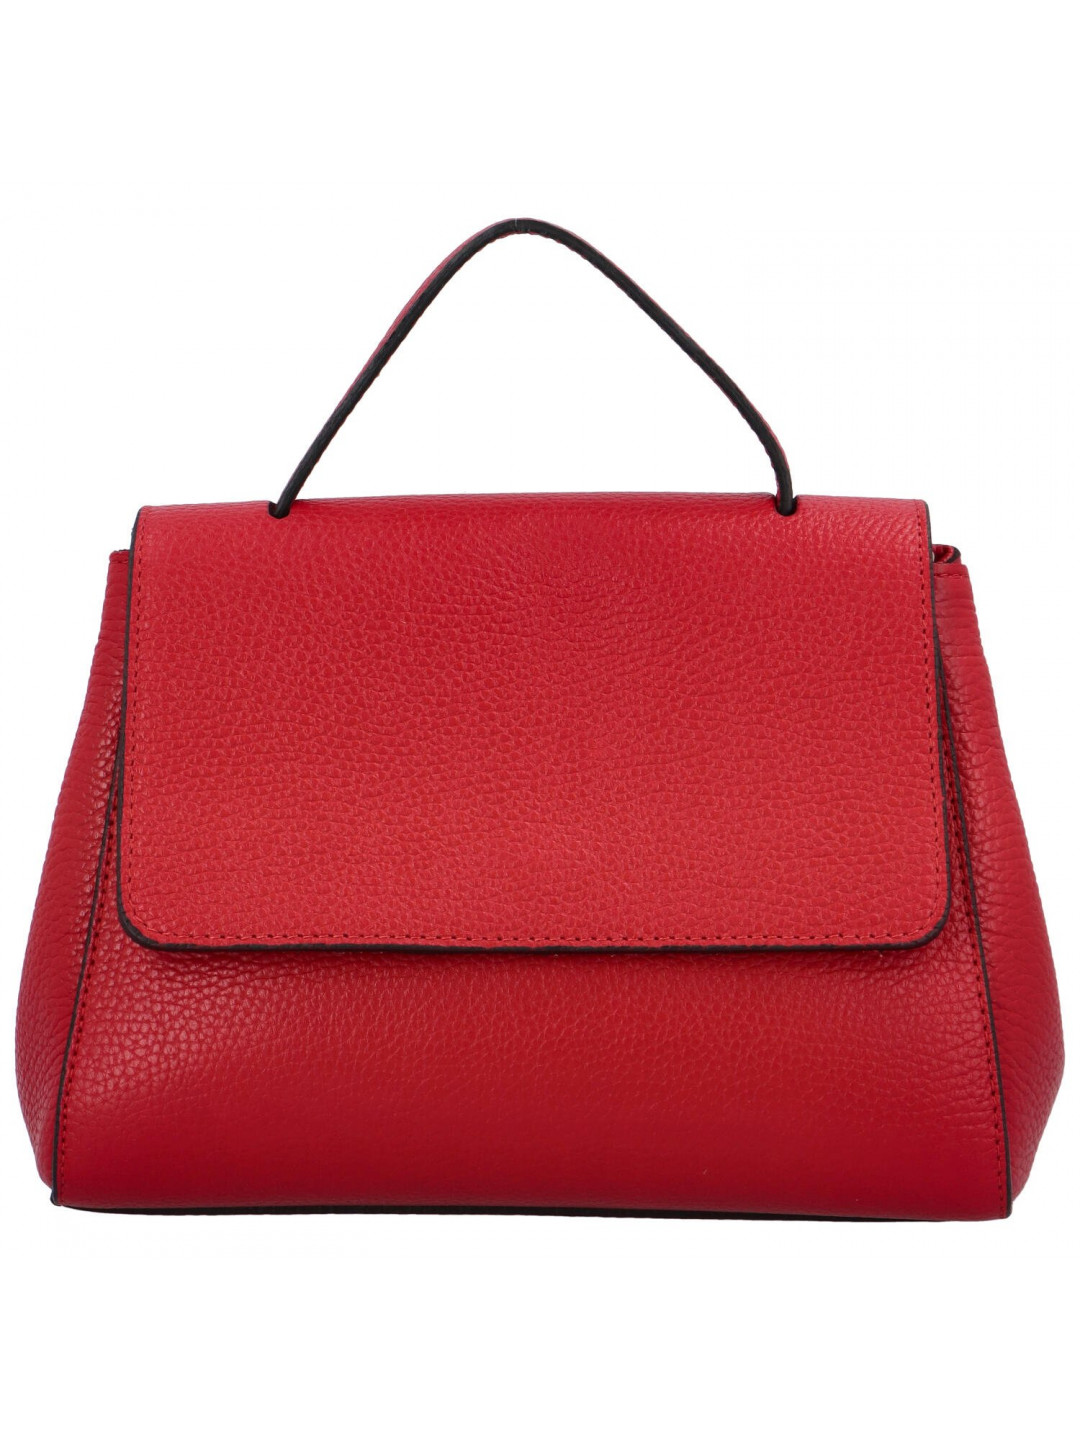 Dámská kožená kabelka do ruky červená – Delami Vera Pelle Fatismy